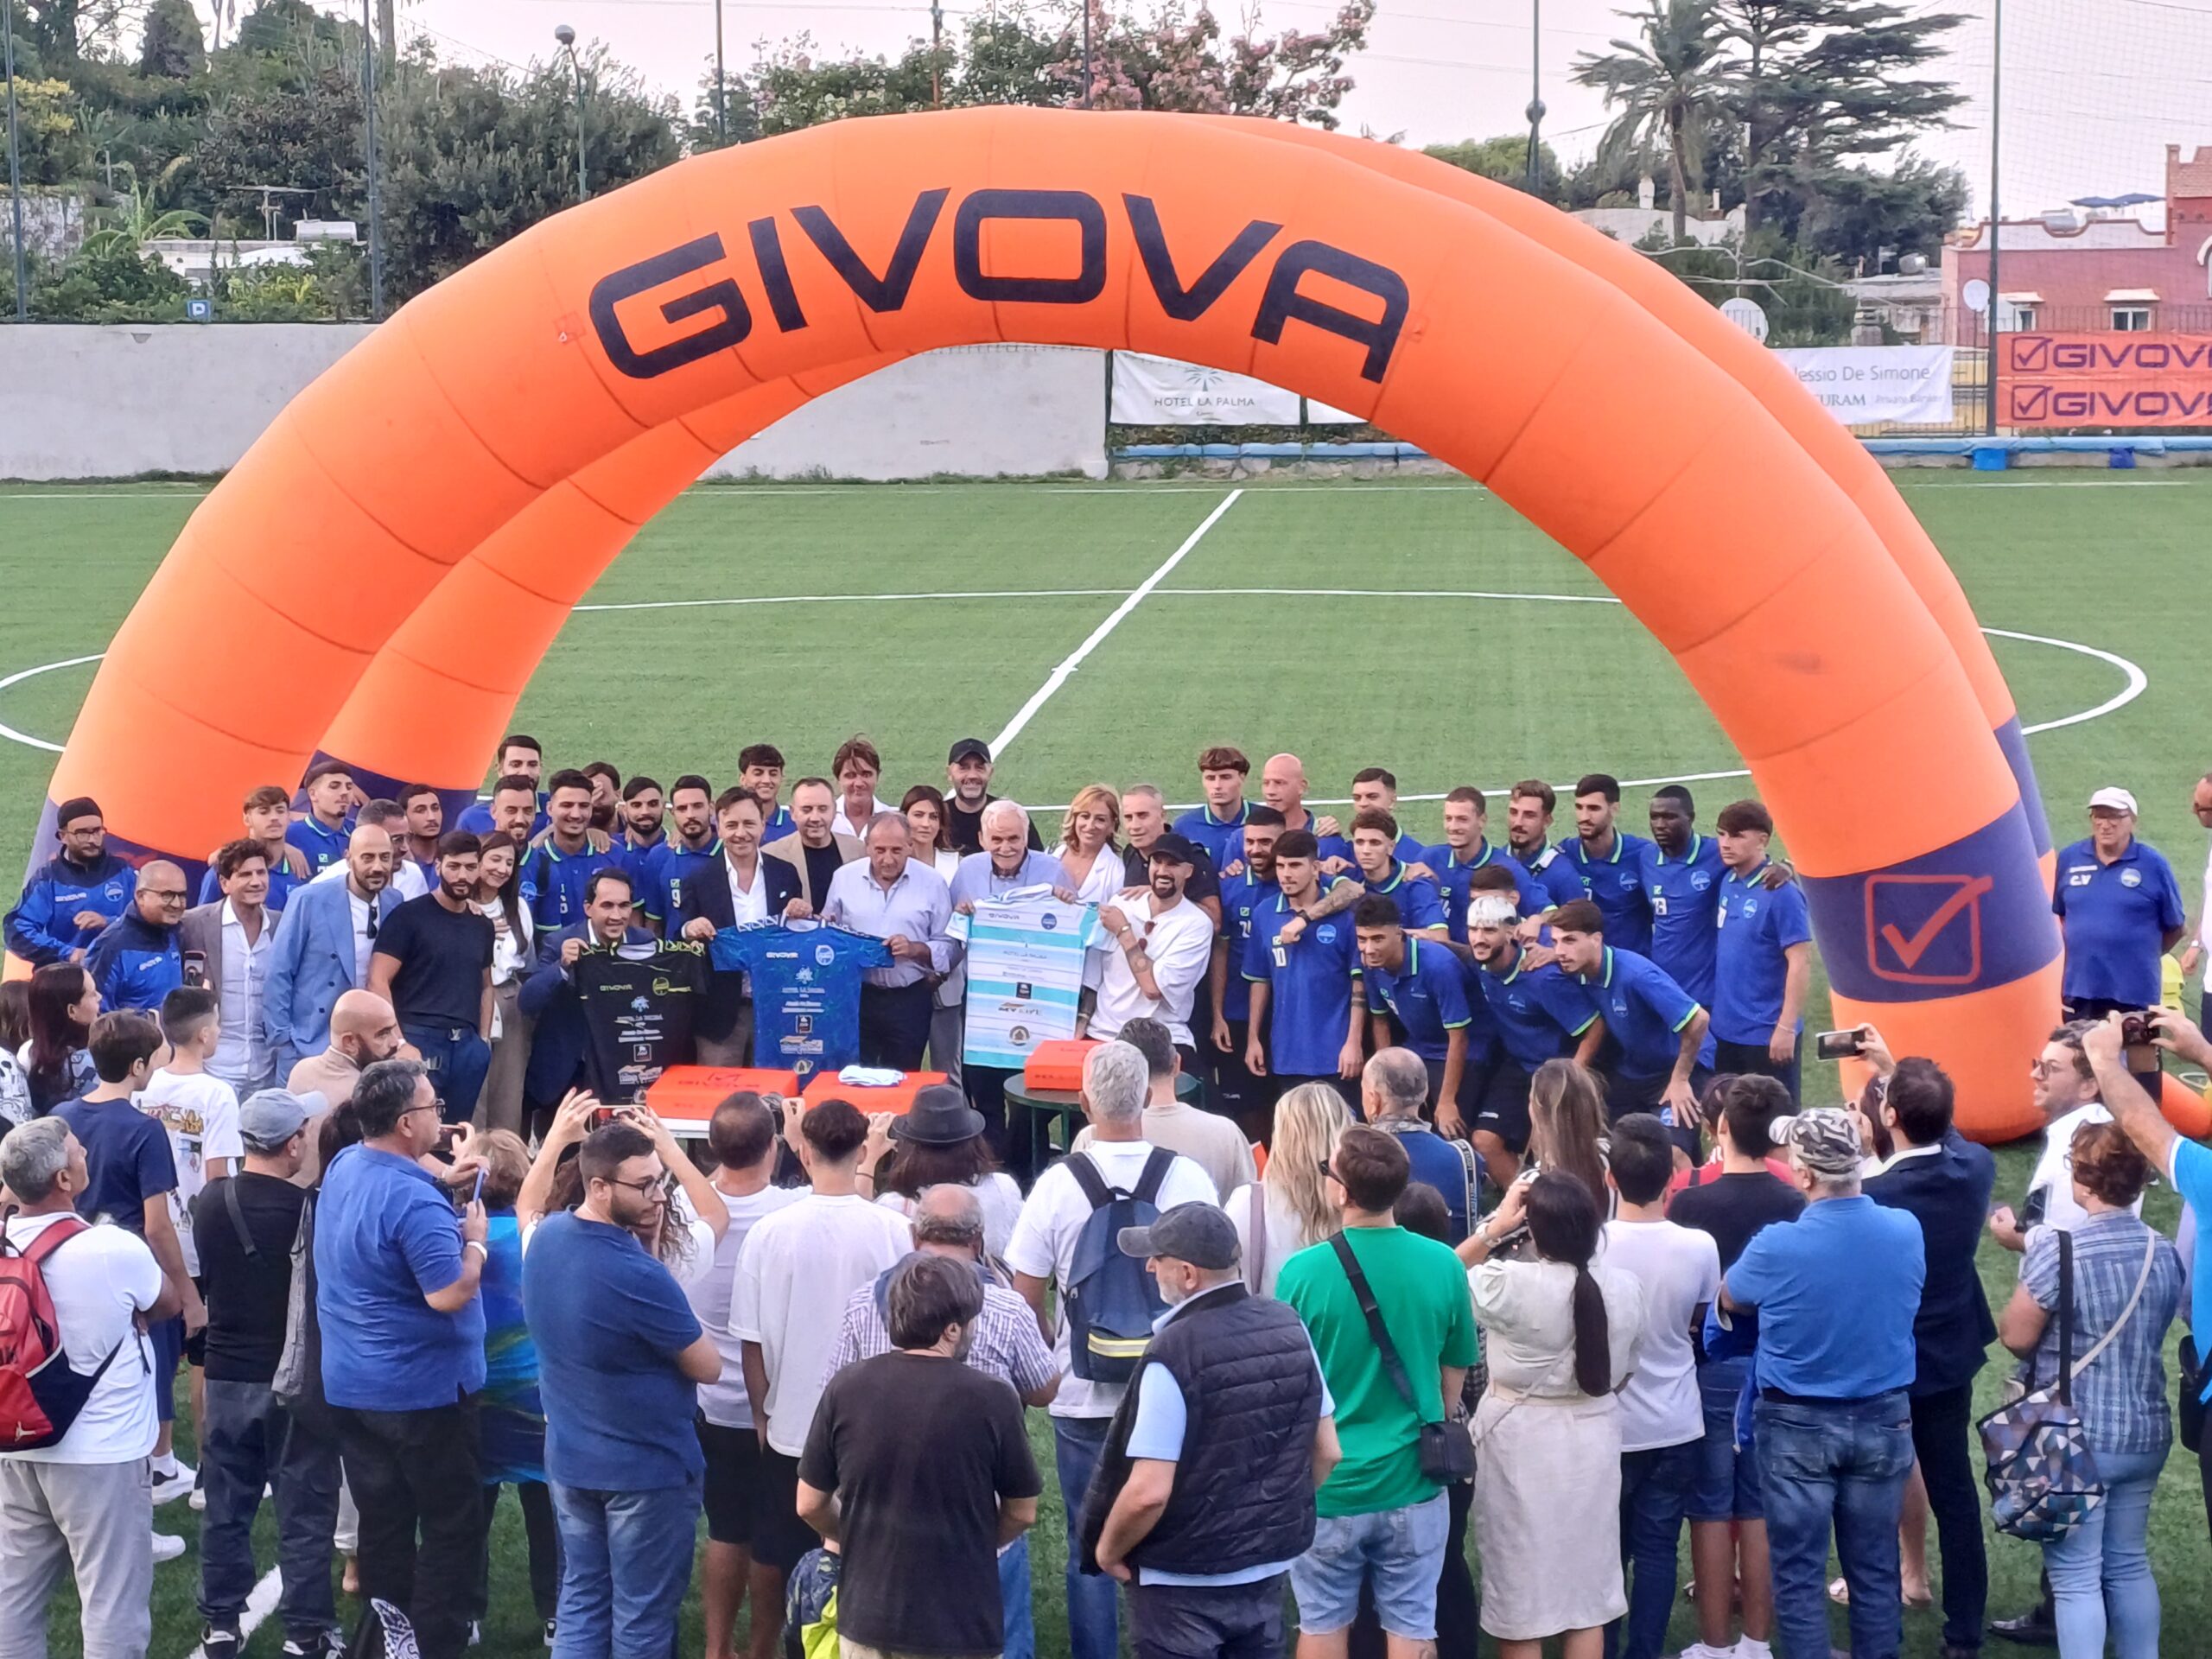 Givova Capri Anacapri: la presentazione ufficiale di squadra, divise e sponsor (photogallery)